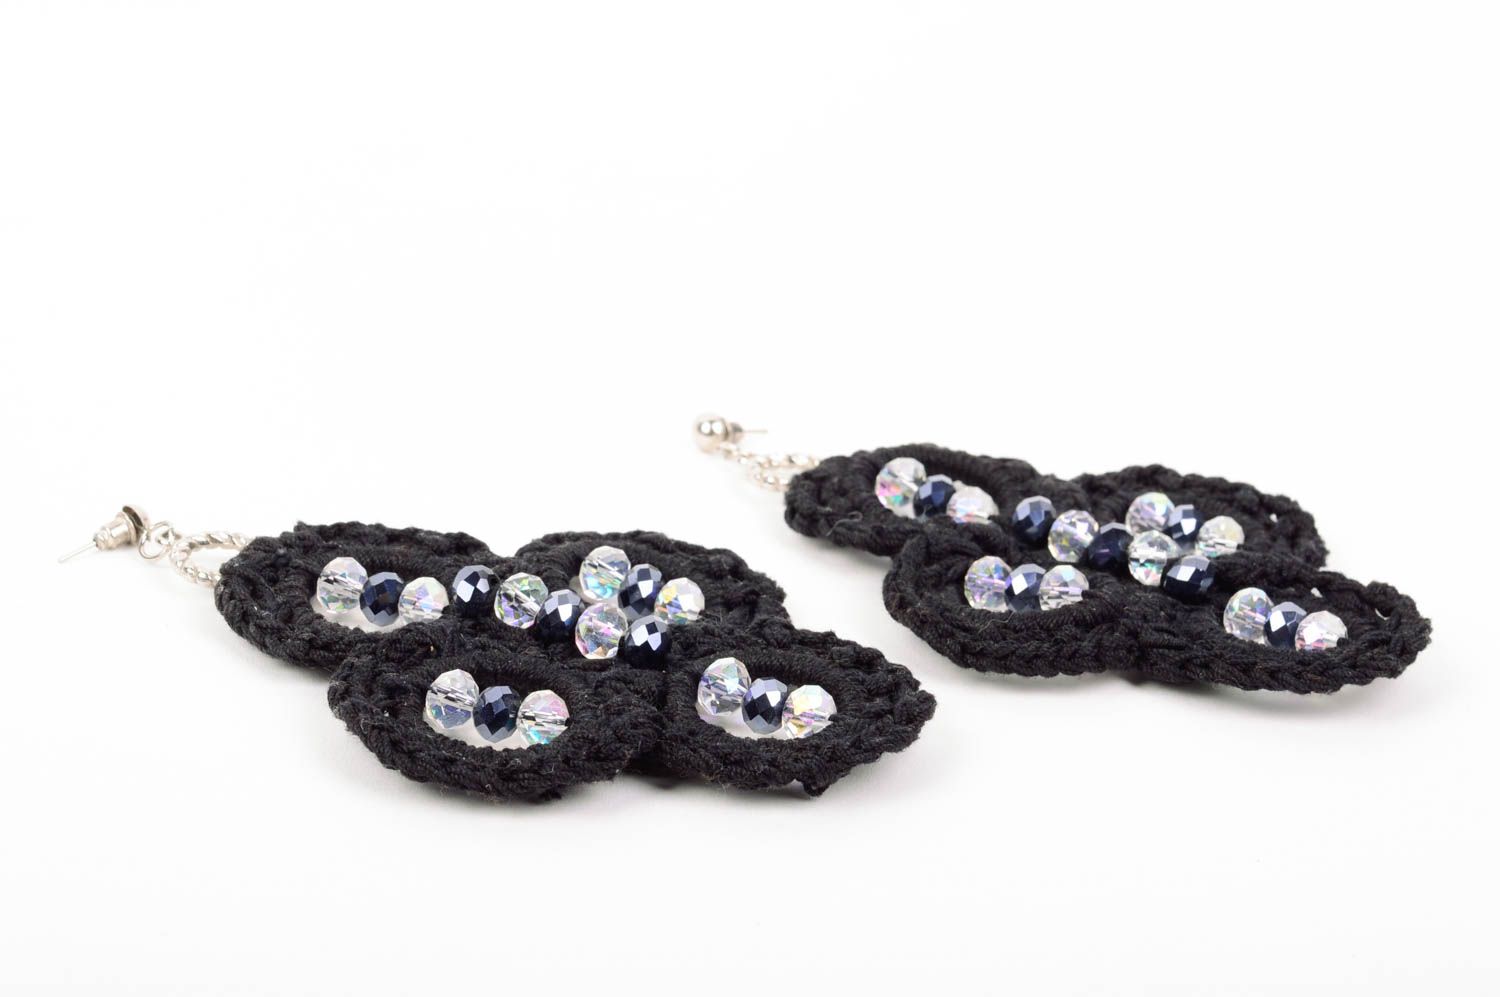 Handmade earrings designer earrings braided earrings unusual gift for girls photo 4